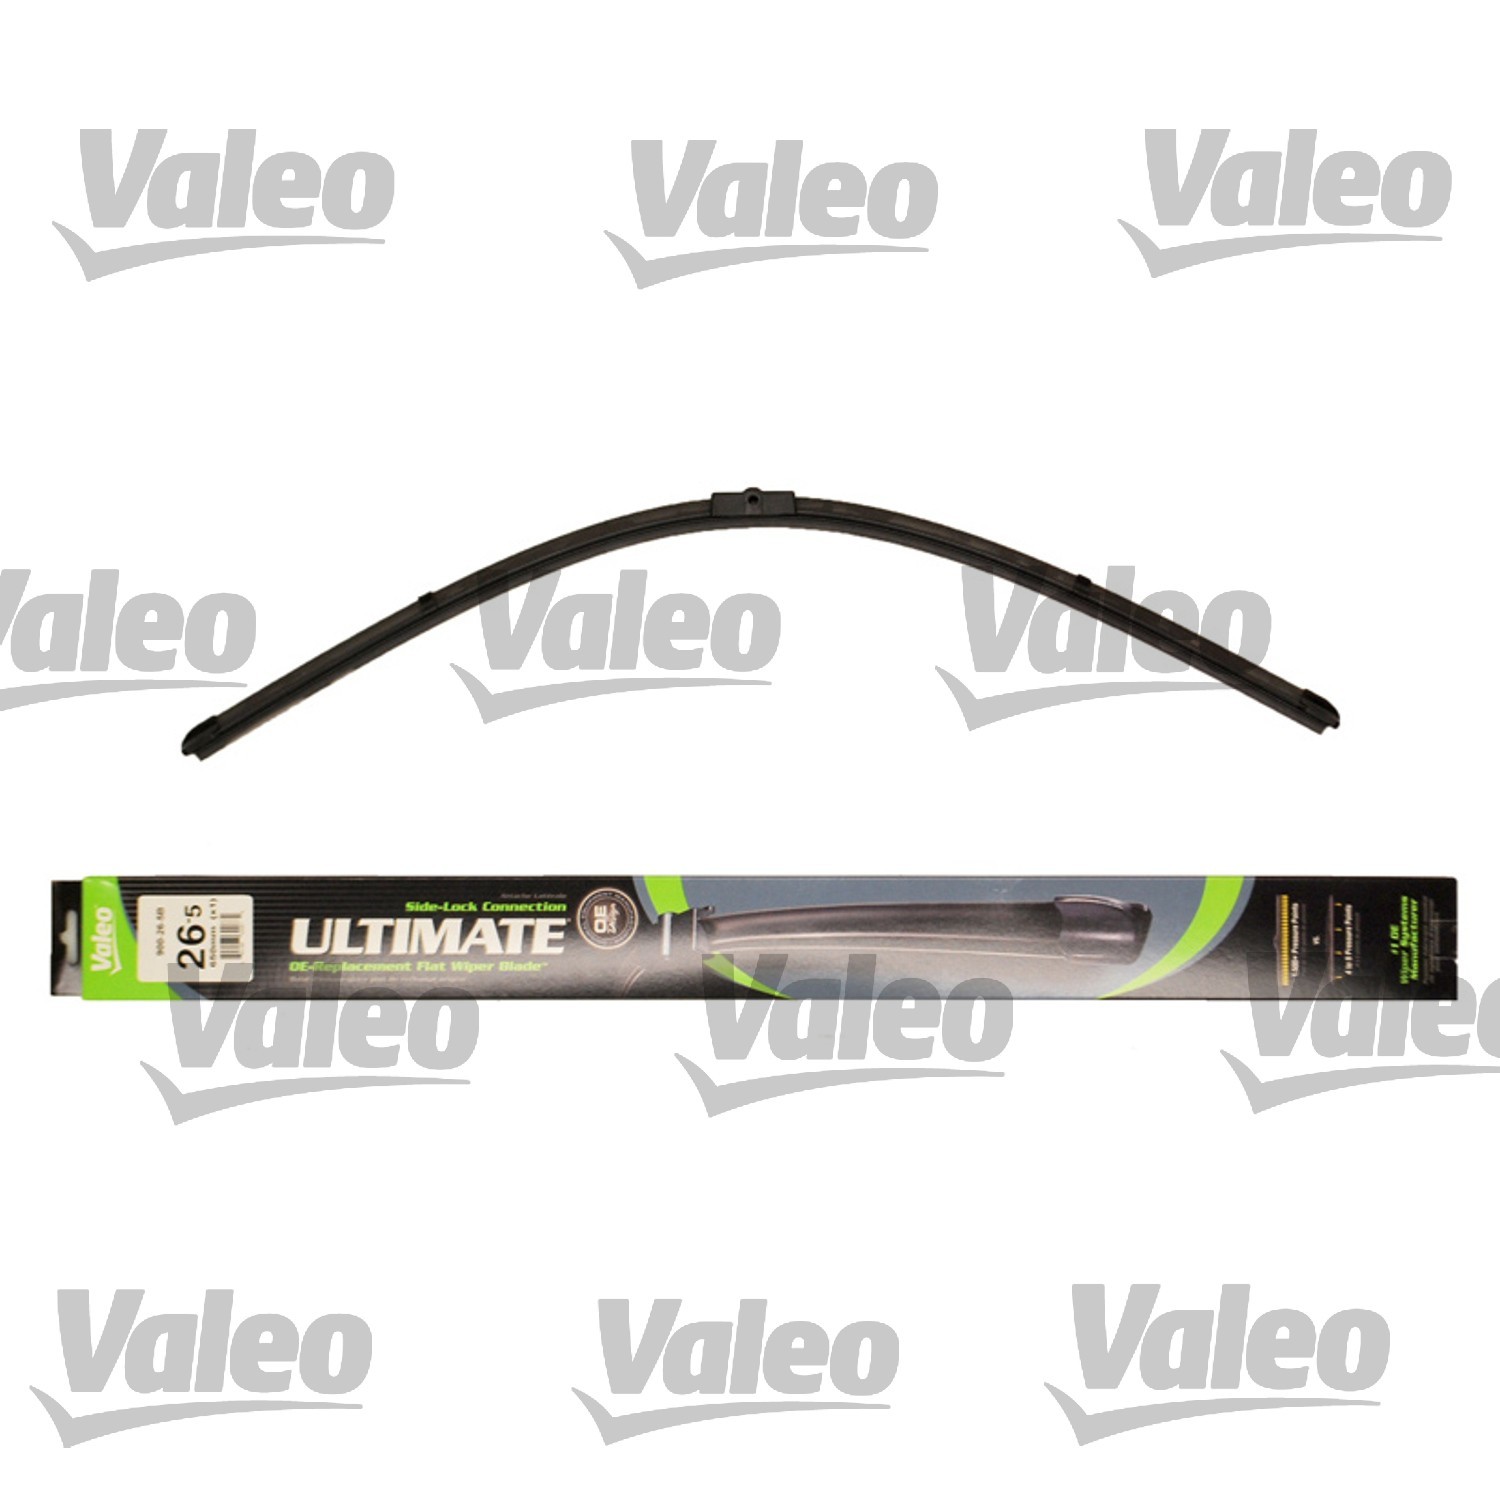 VALEO - Ultimate Wiper Blade Refill - VEO 900-26-5B